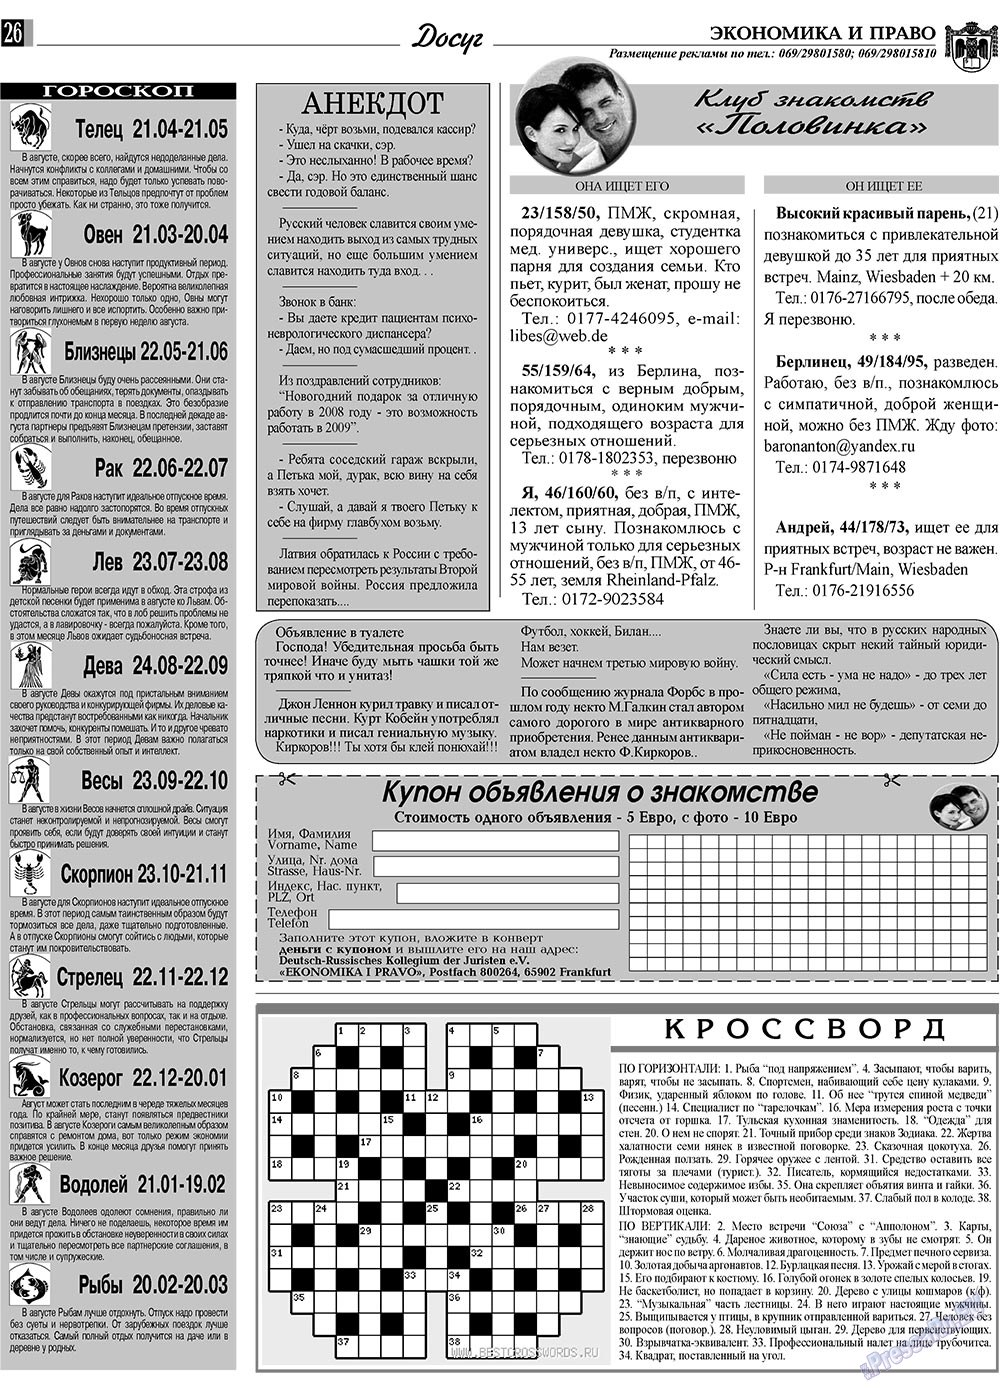 Экономика и право, газета. 2009 №8 стр.26